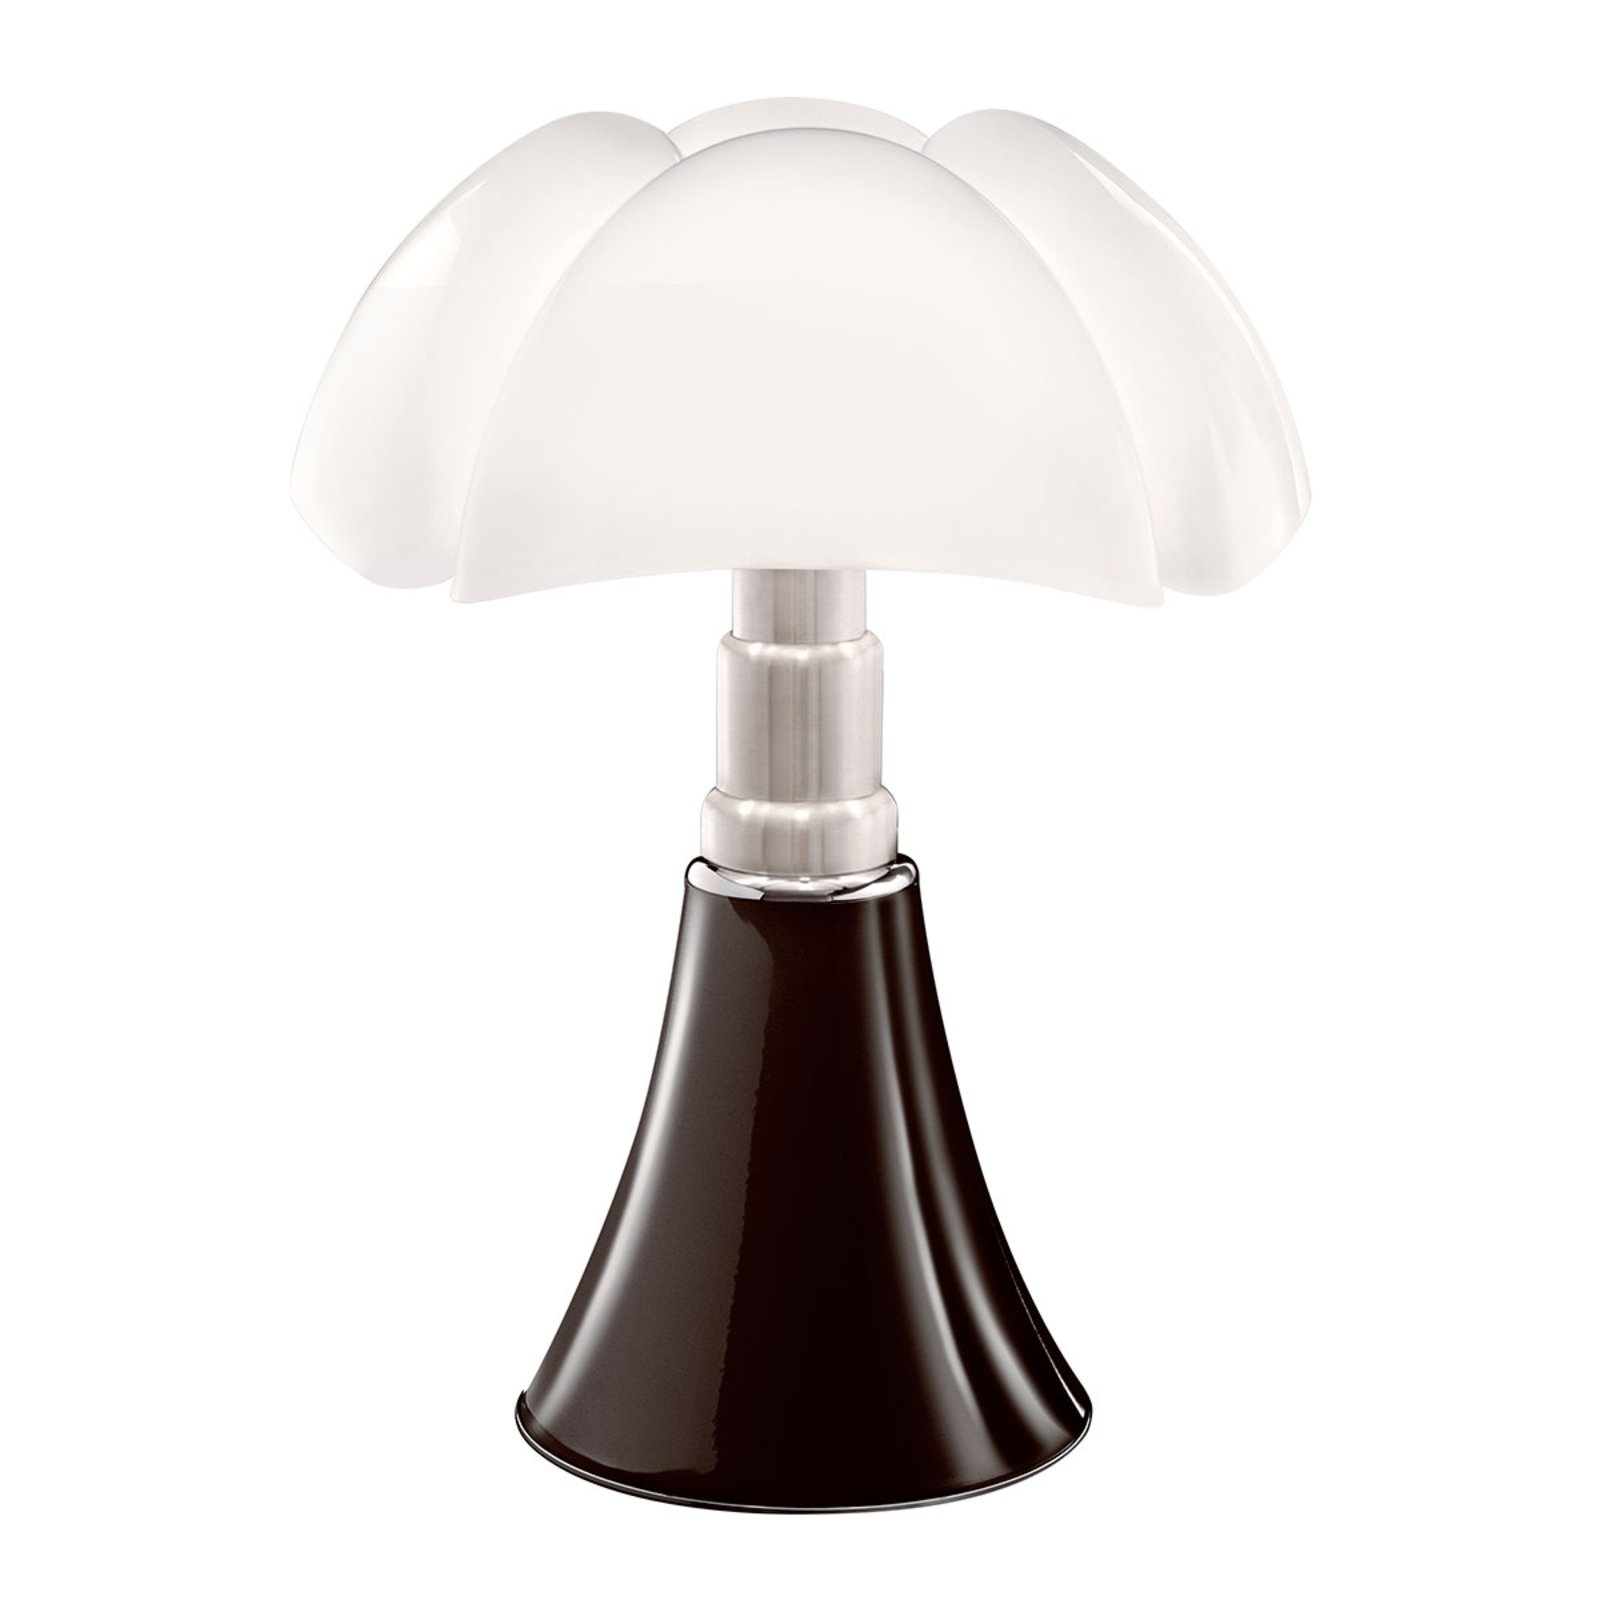 Martinelli Luce Pipistrello - stolna lampa, smeđa